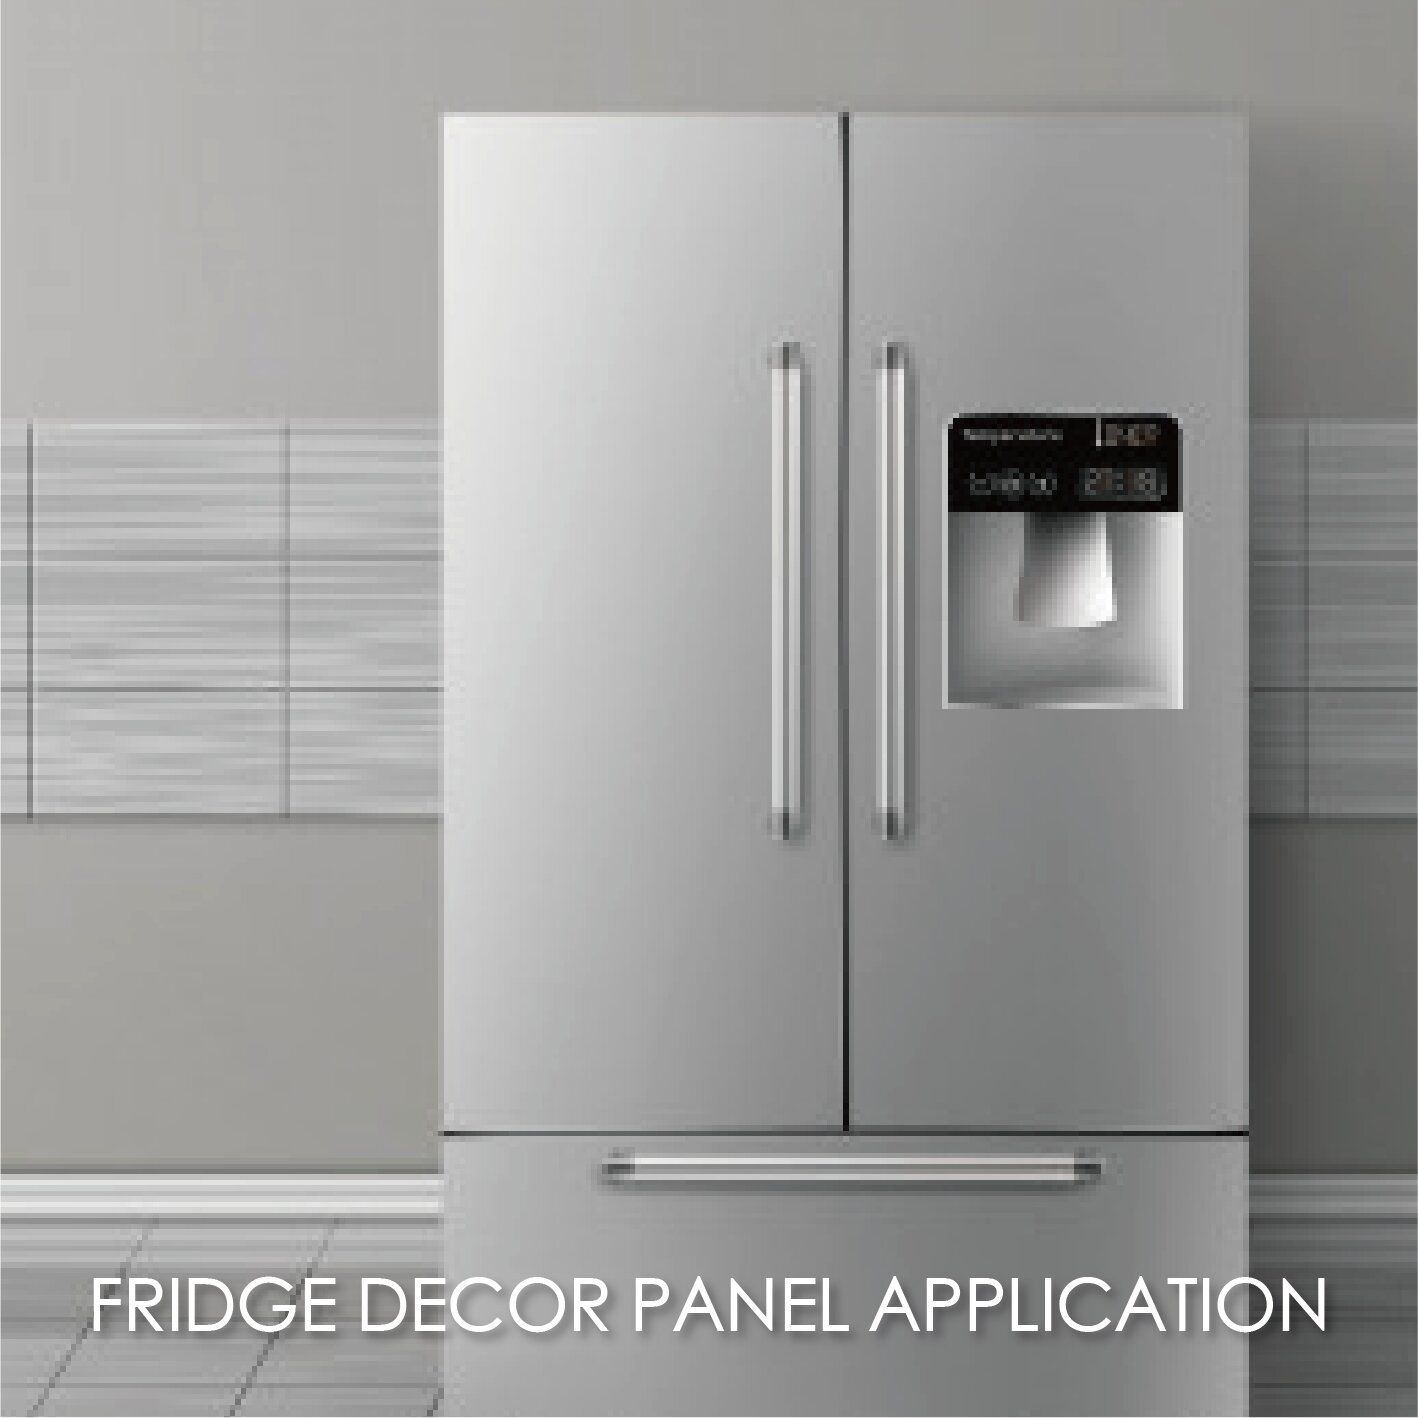 Finden Sie eine passende Lösung für Ihren Kühlschrank